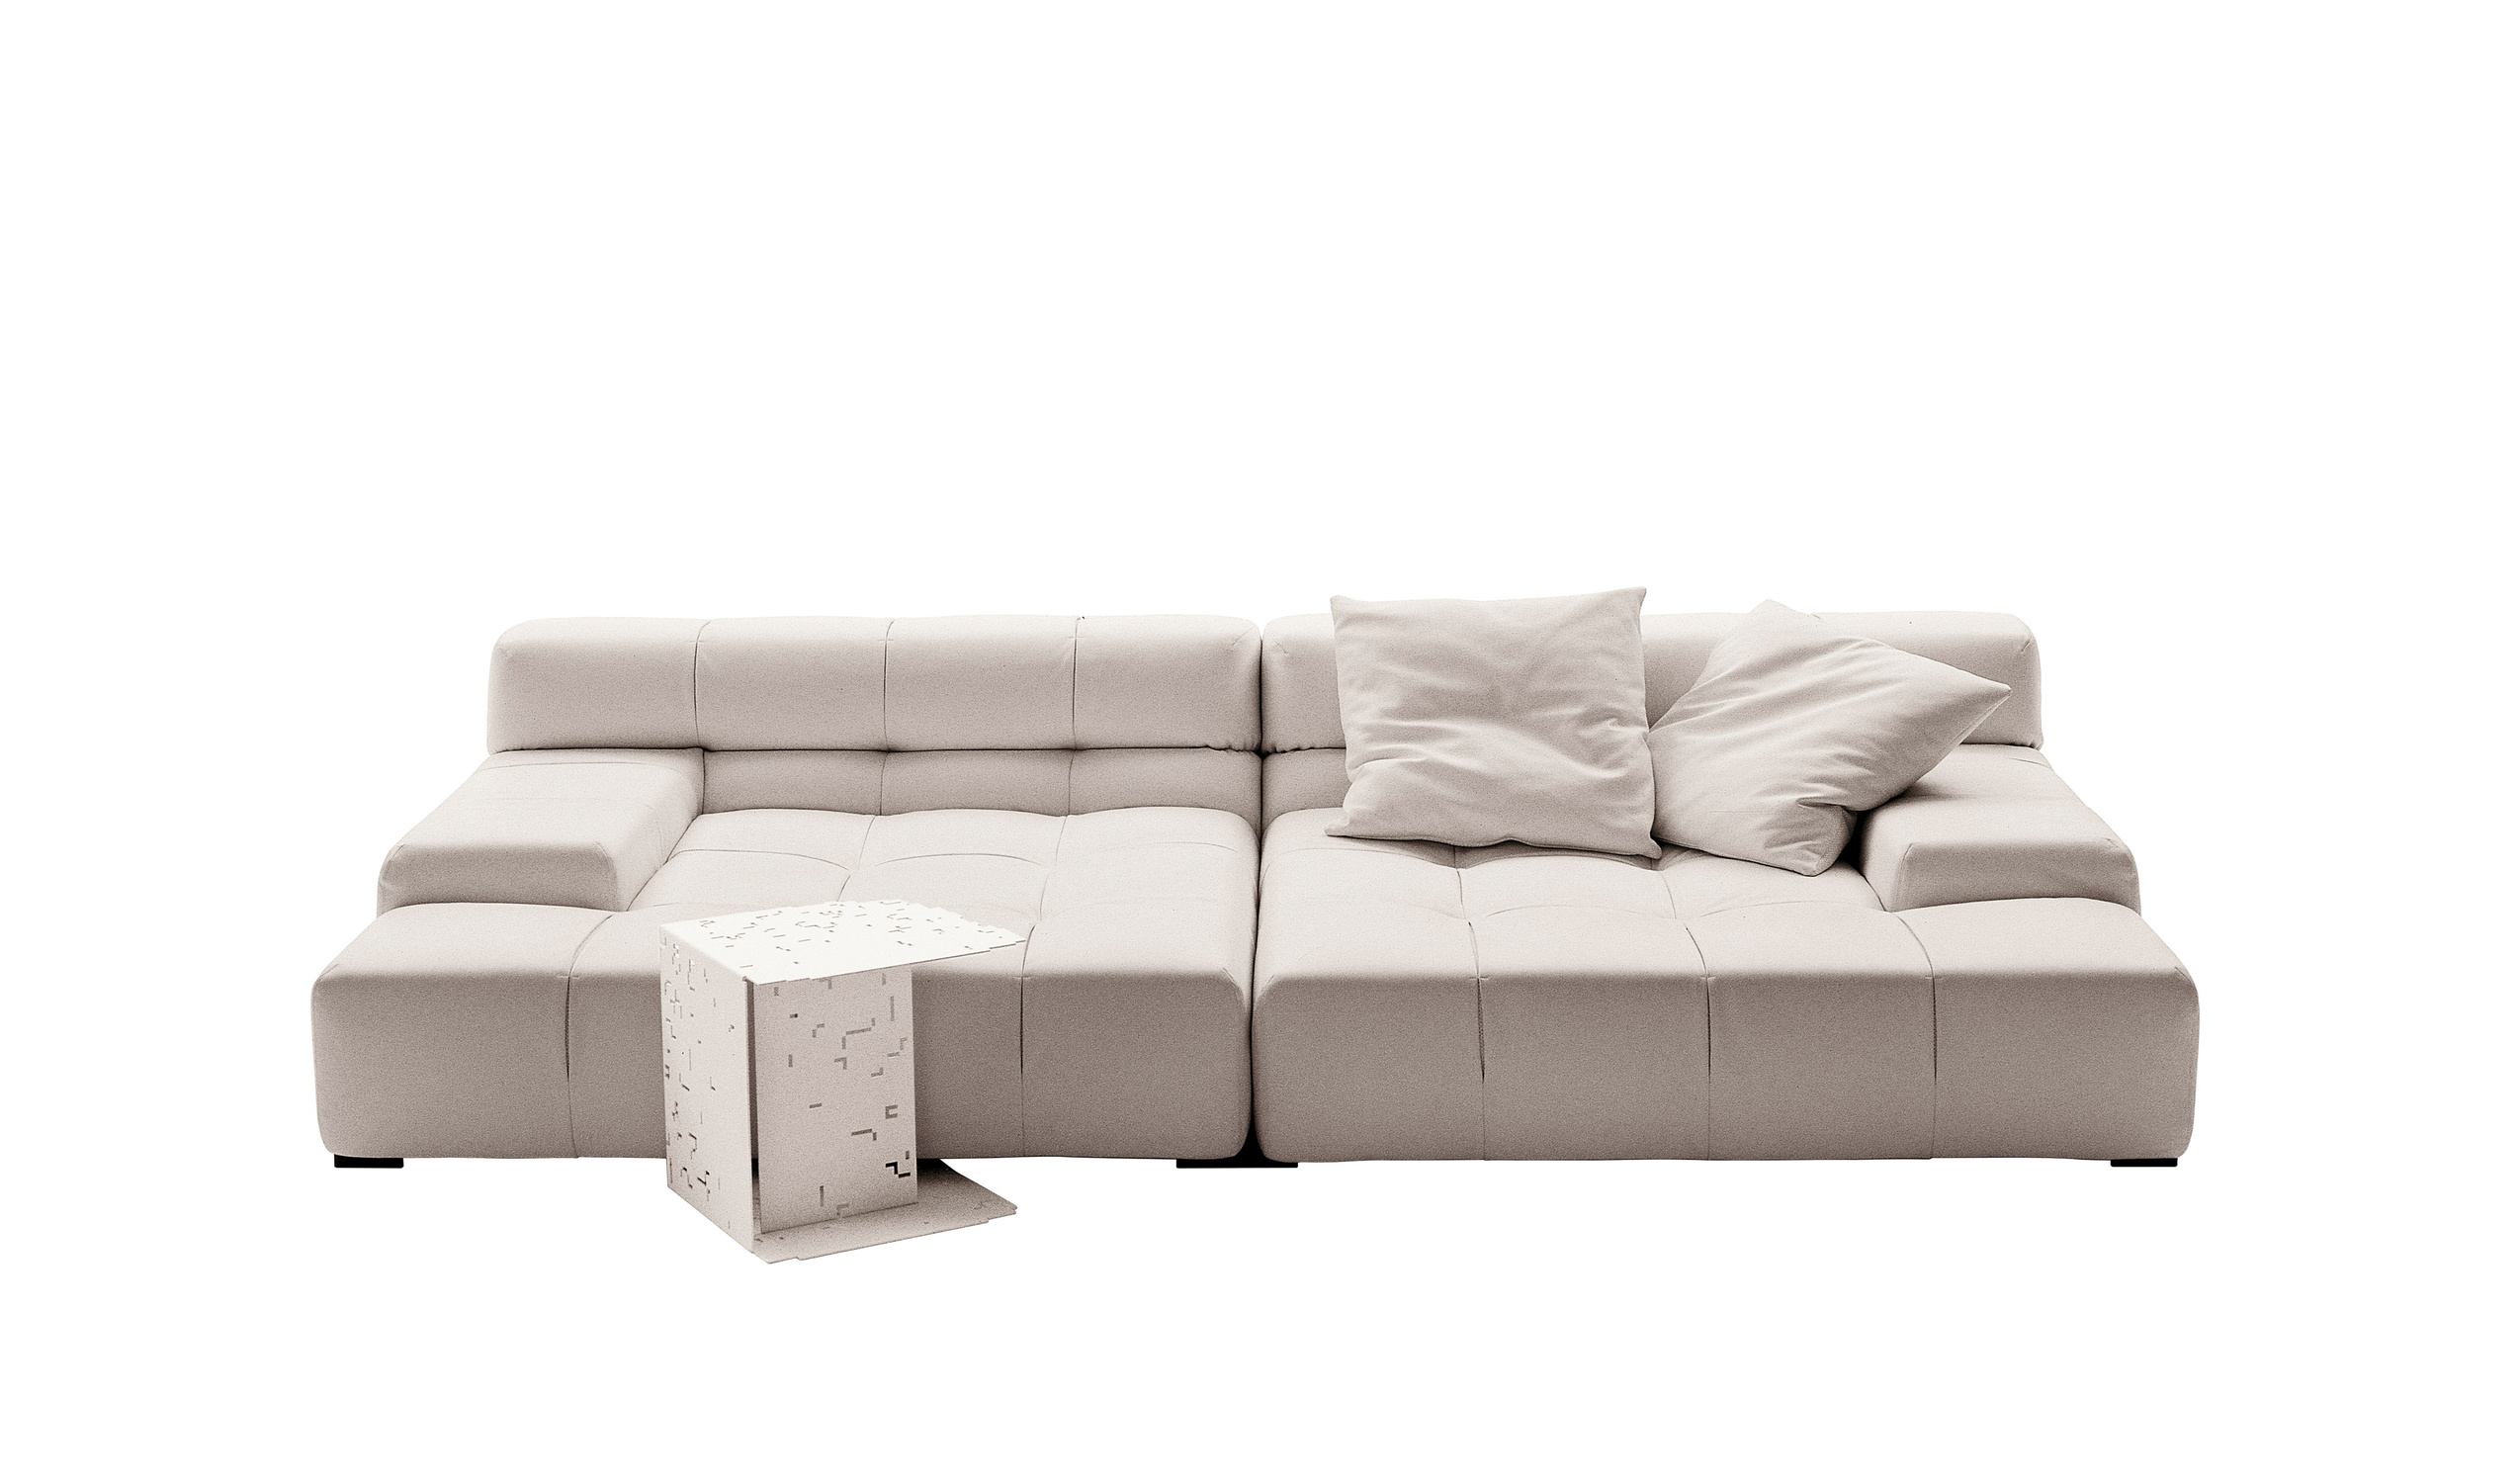 Modern designer italian sofas - Tufty-Time Sofas 10